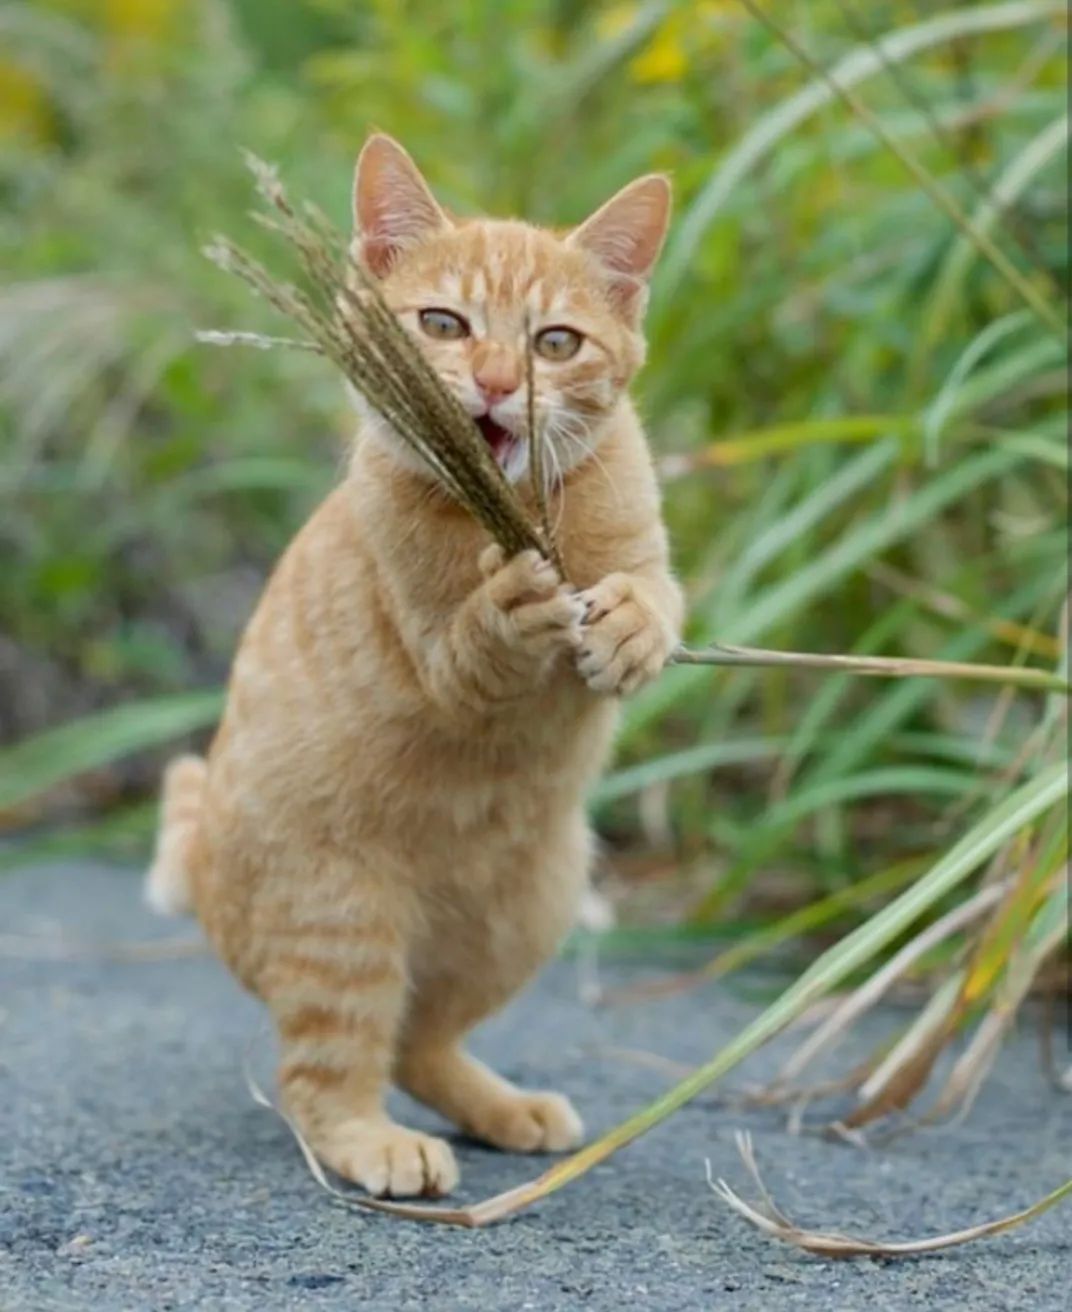 对猫有毒的5种植物 第一种号称 猫中砒霜 撸猫教授 二十次幂